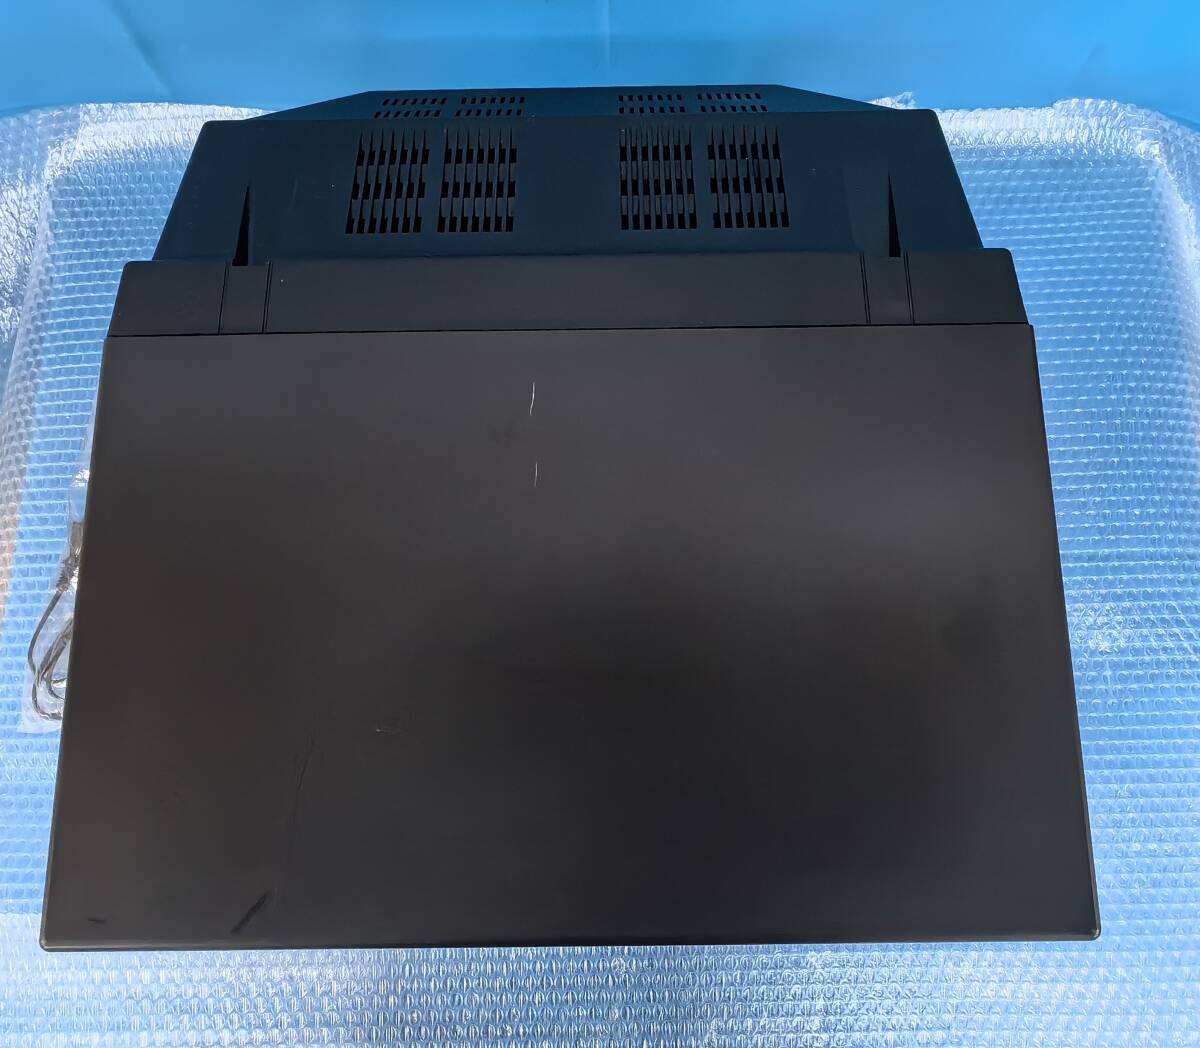 [YH1196] Fujitsu FUJITSU персональный компьютер FM77AV40 цвет CRT телевизор --15SD FMTV-154 клавиатура и т.п. комплект не использовался товар товары долгосрочного хранения 